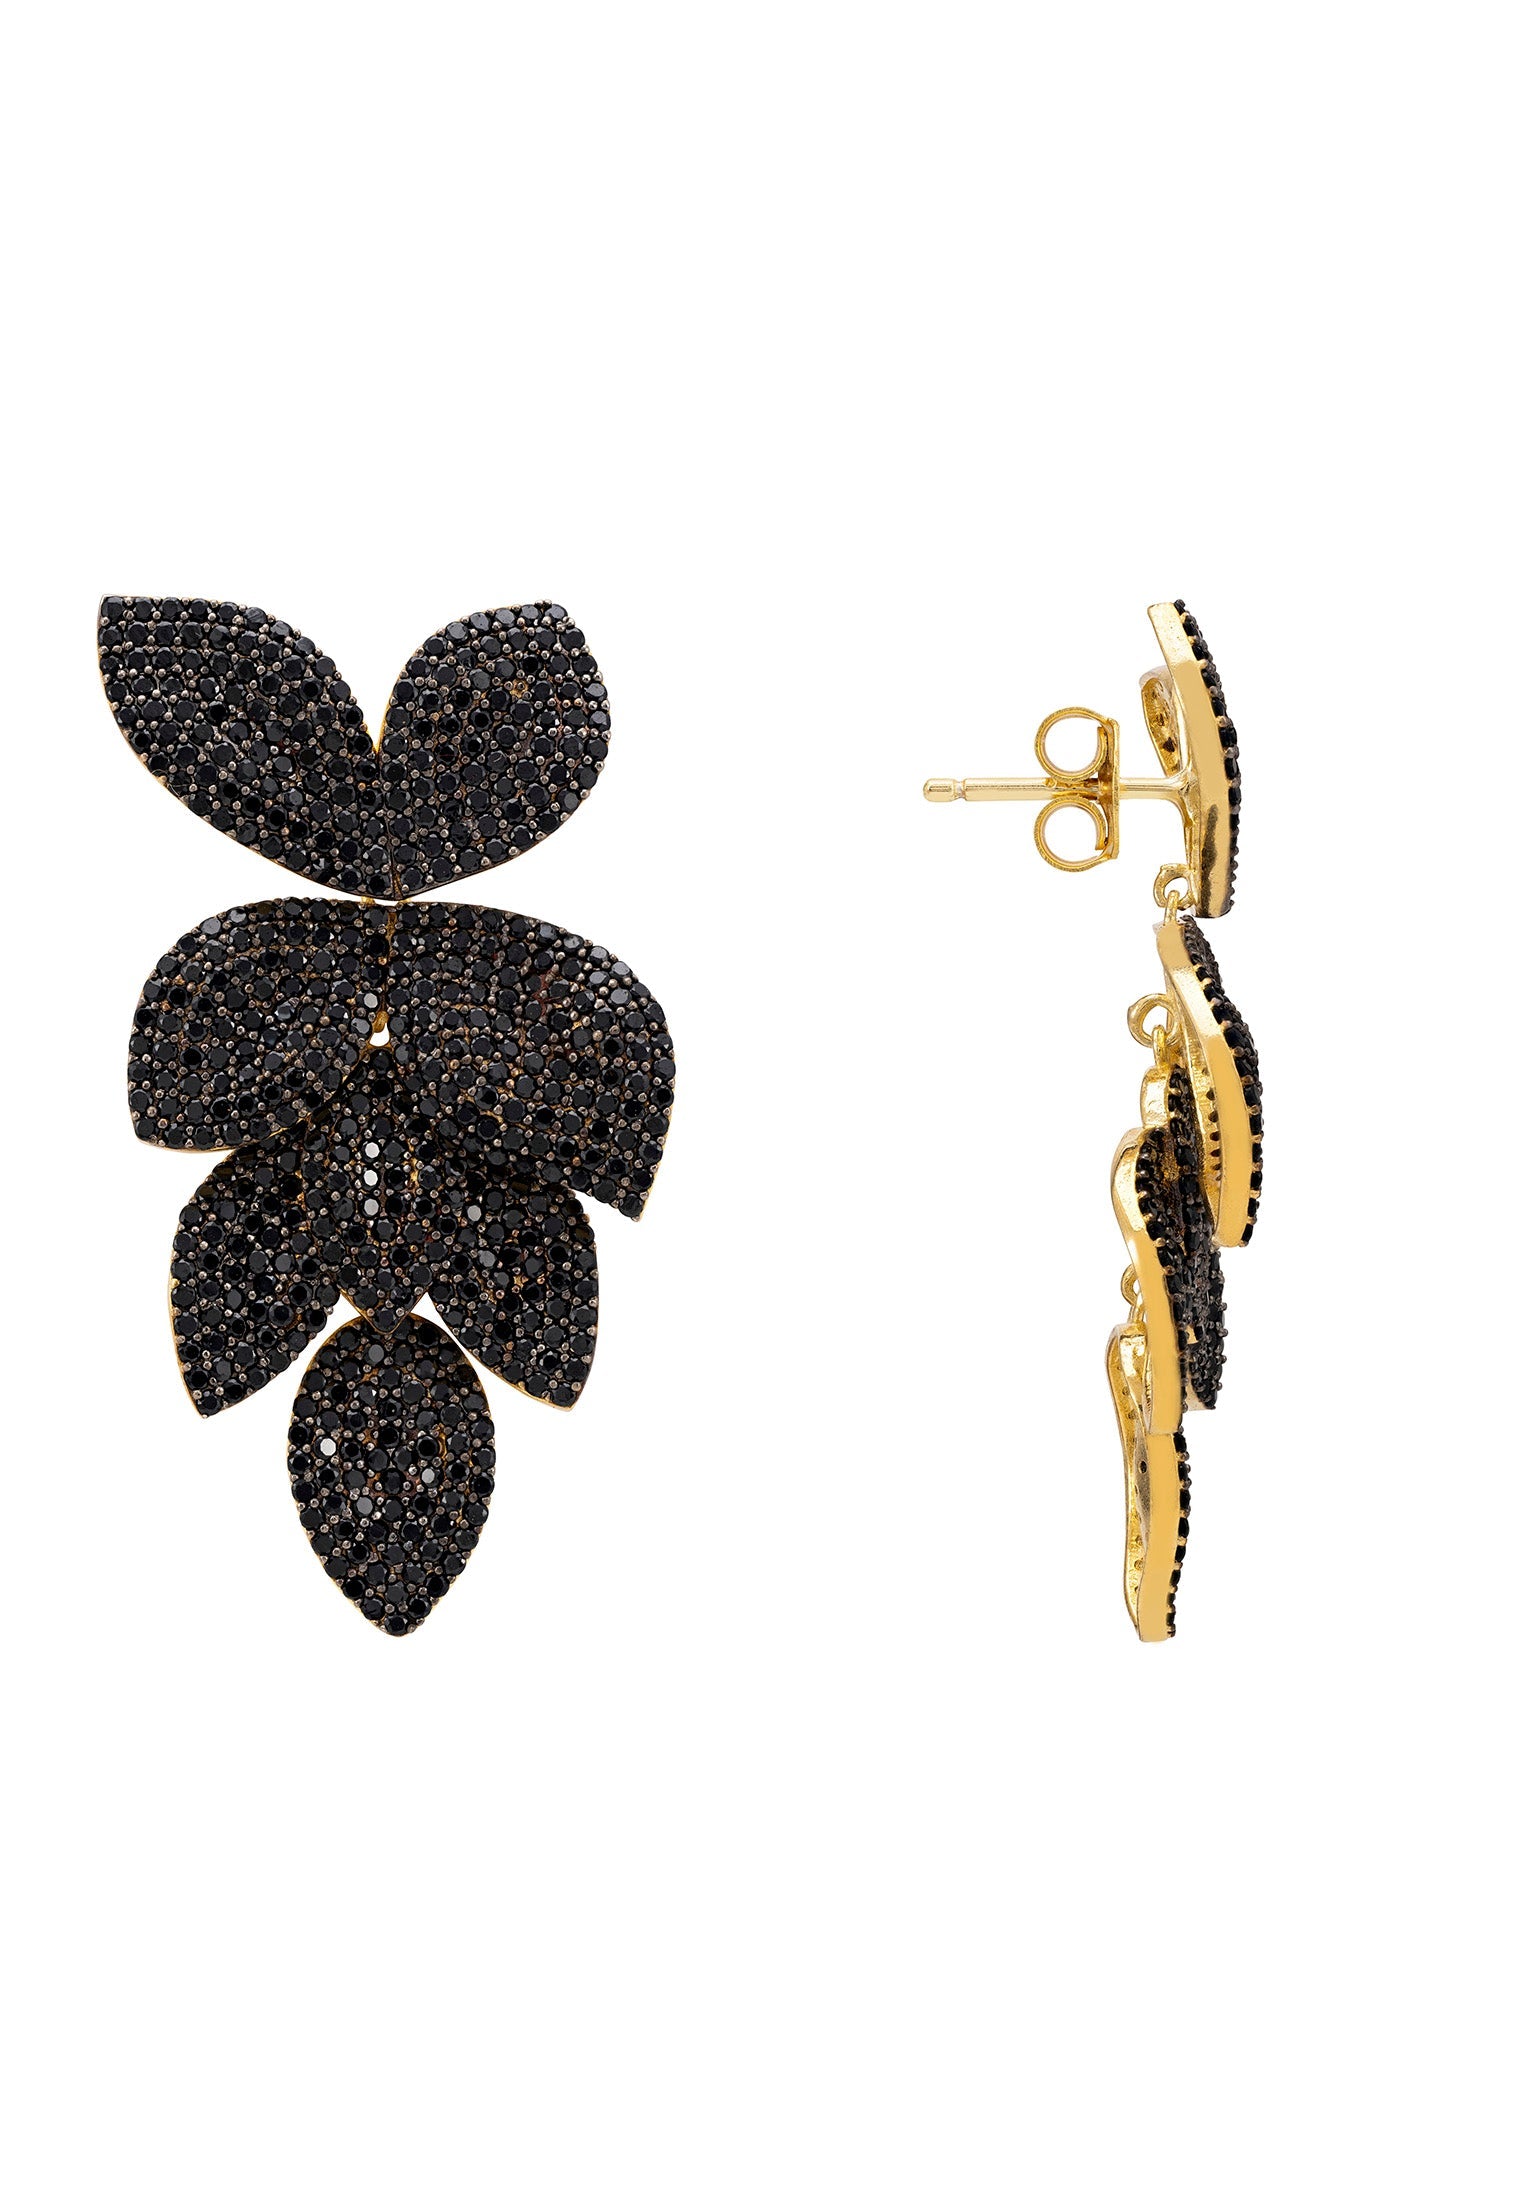 Petal Cascading Flower Earrings Gold Black Cz - lolaluxeshop